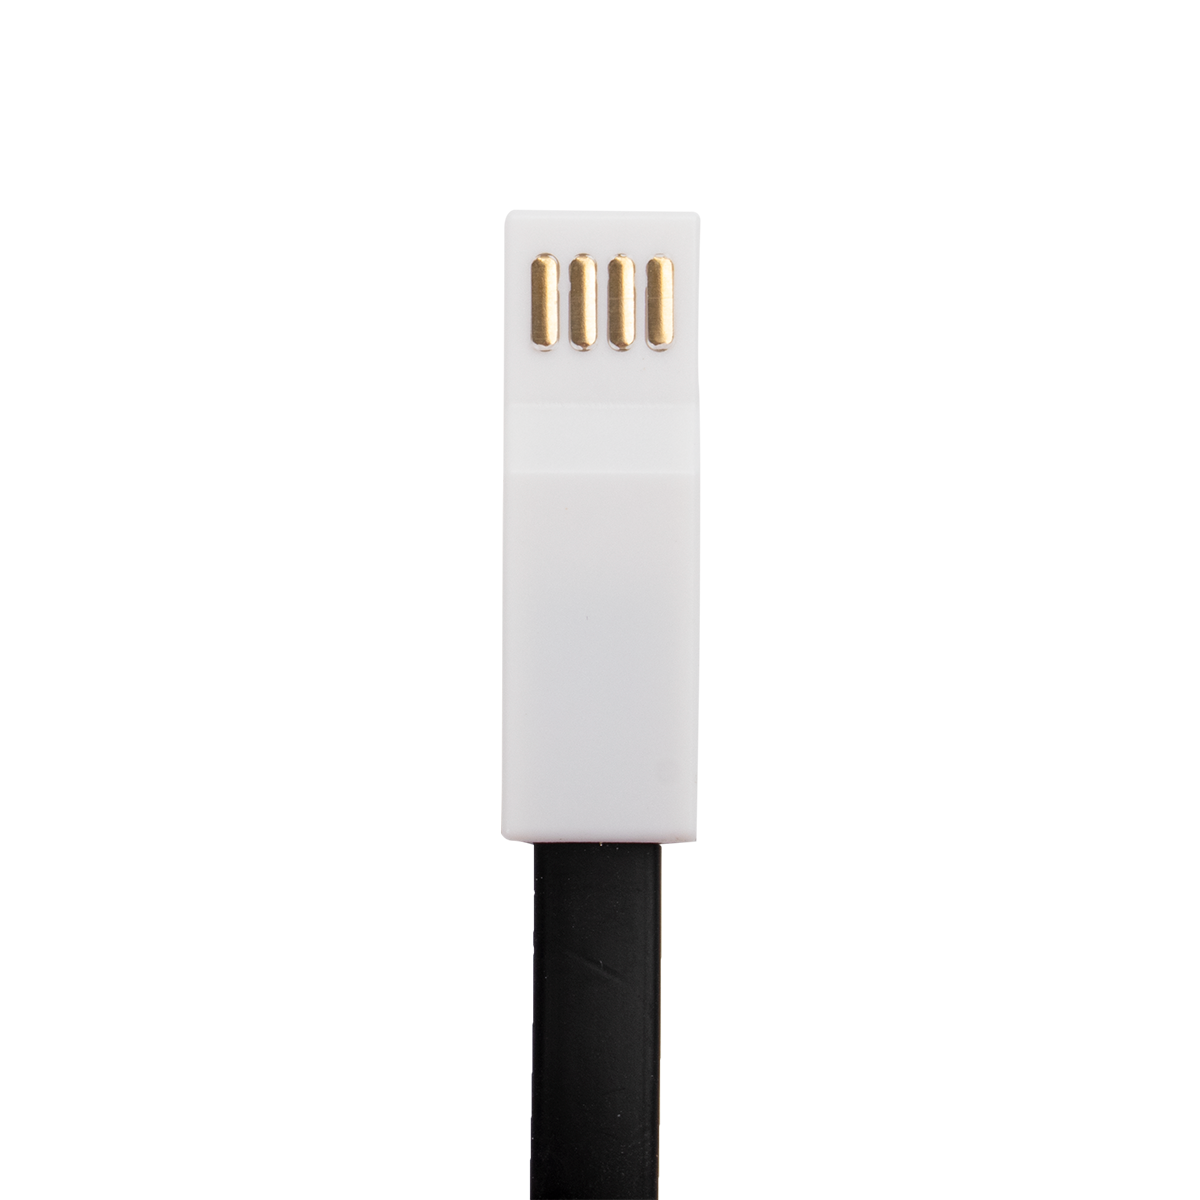 2019 Summit USB Cord